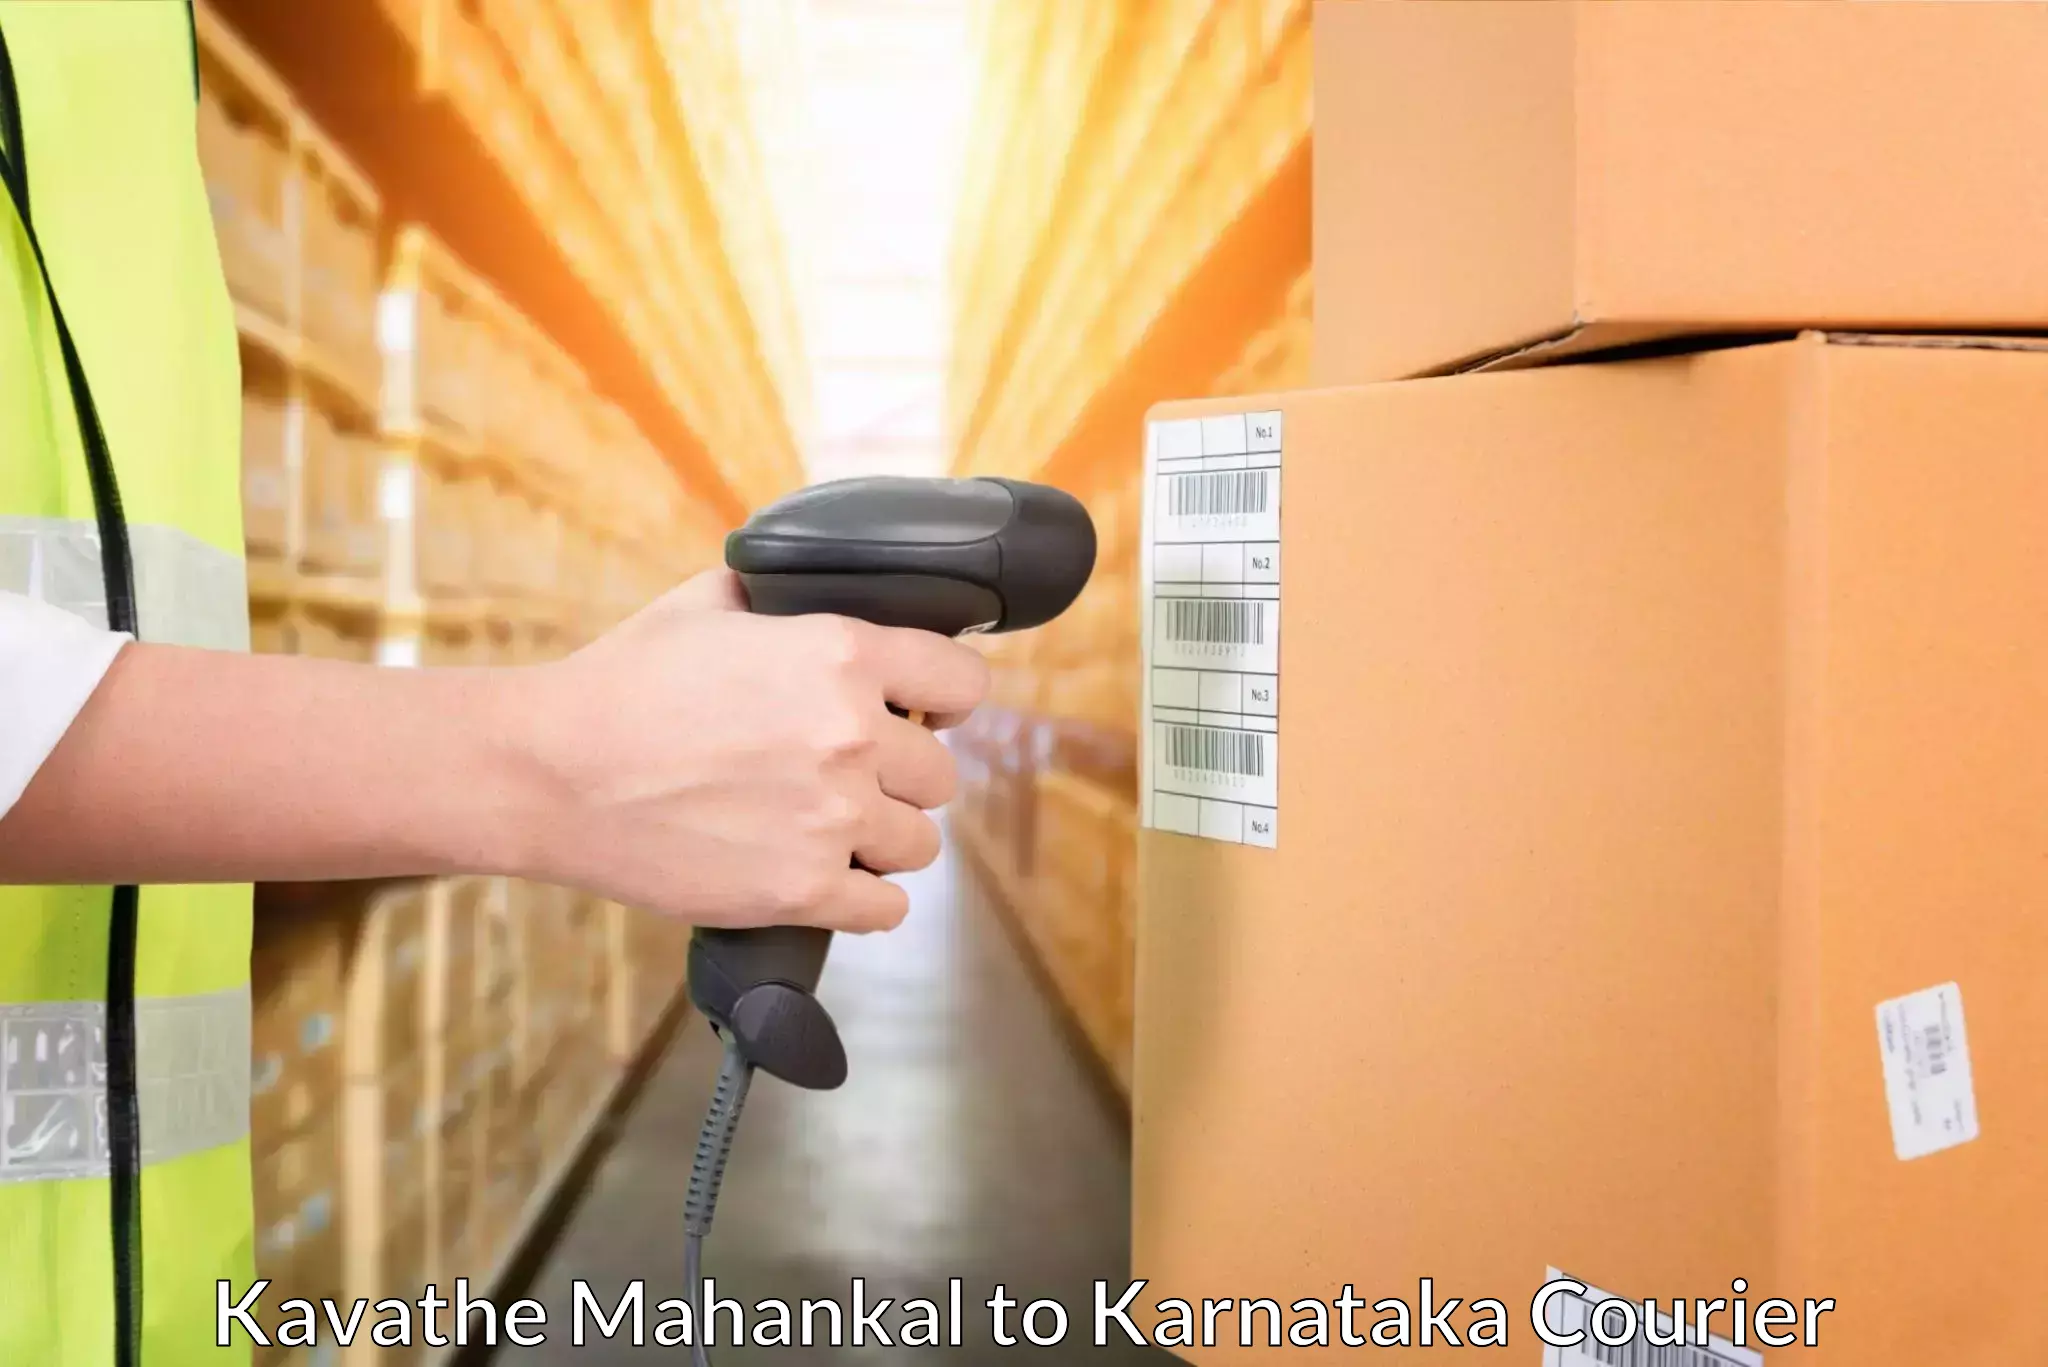 High-capacity shipping options Kavathe Mahankal to Srirangapatna